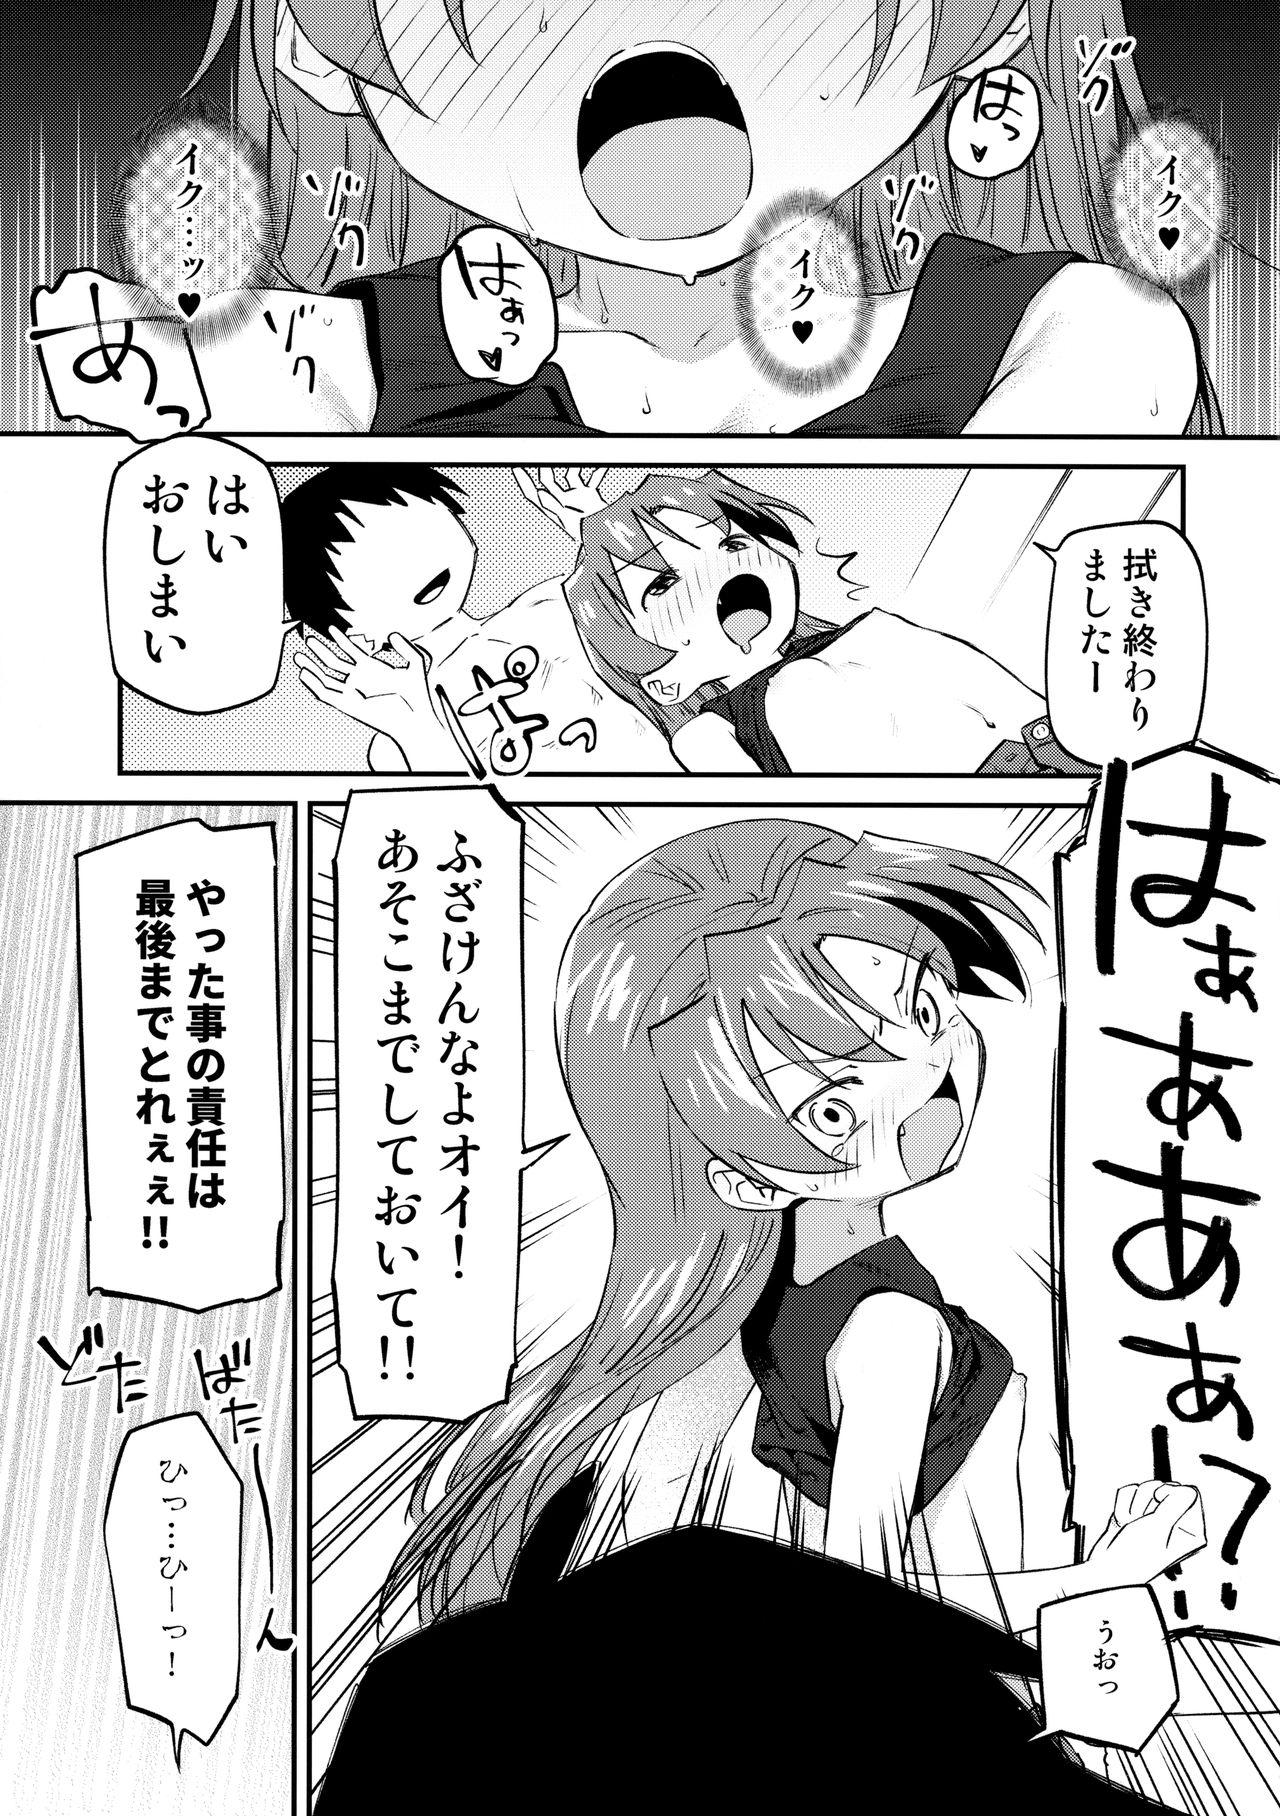 Orgasms Kyouko to Are Suru Hon 3 - Puella magi madoka magica Perra - Page 10